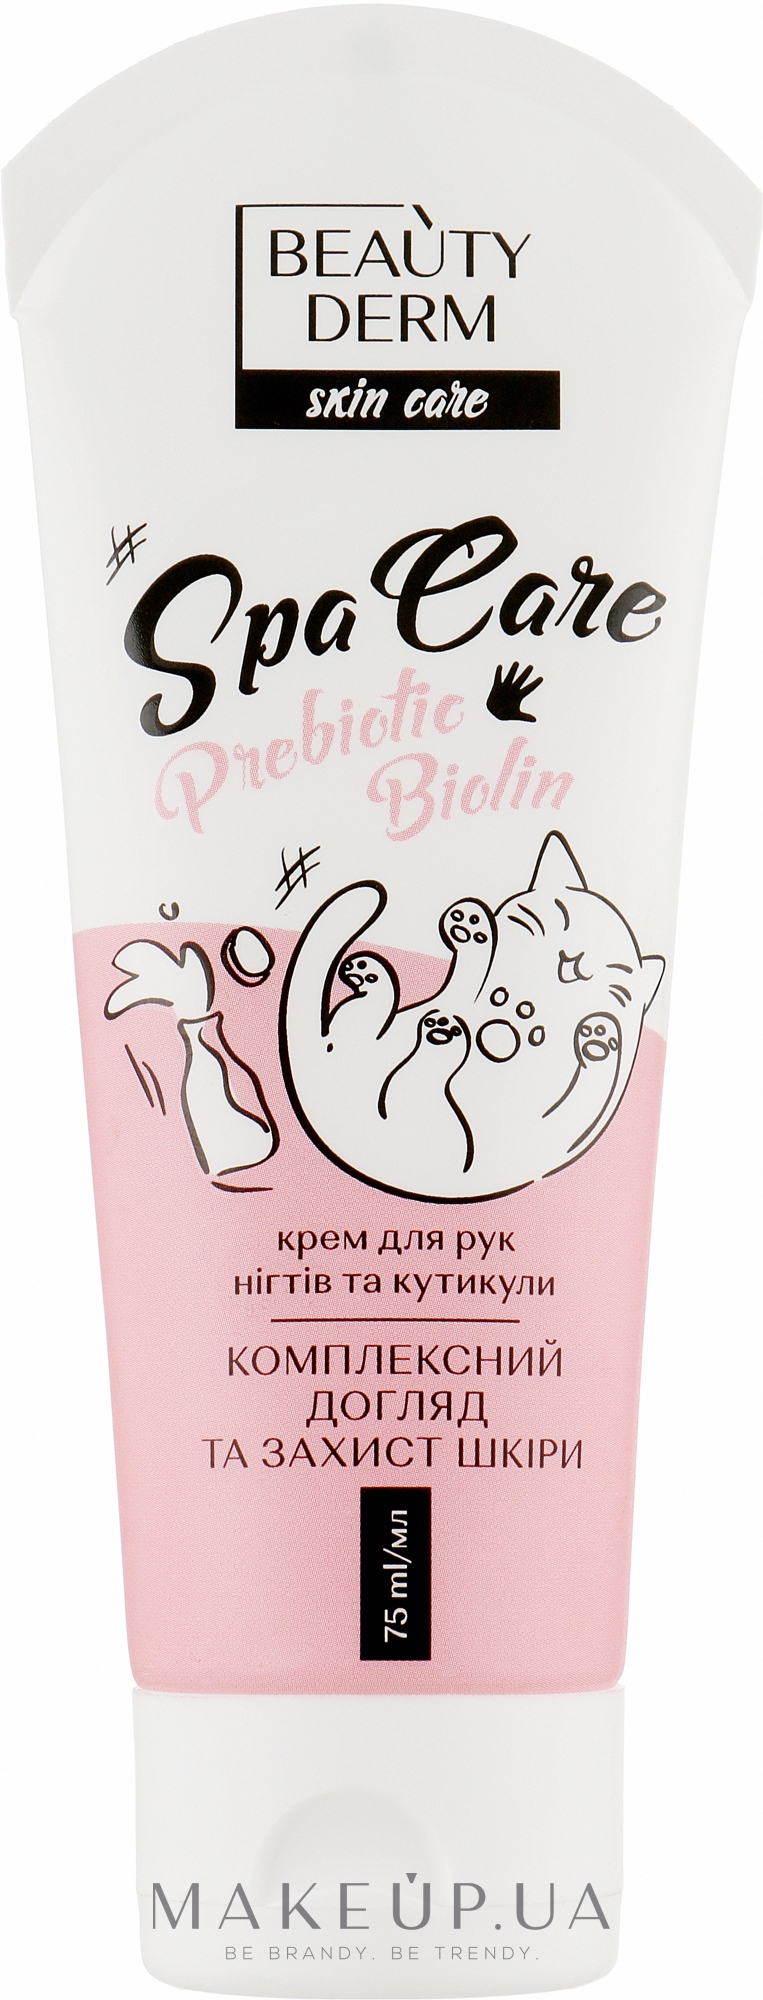 Крем для рук, нігтів і кутикули "Комплексний догляд і захист шкіри" - Beauty Derm Skin Care Spa Care Prebiotic Biolin — фото 75ml